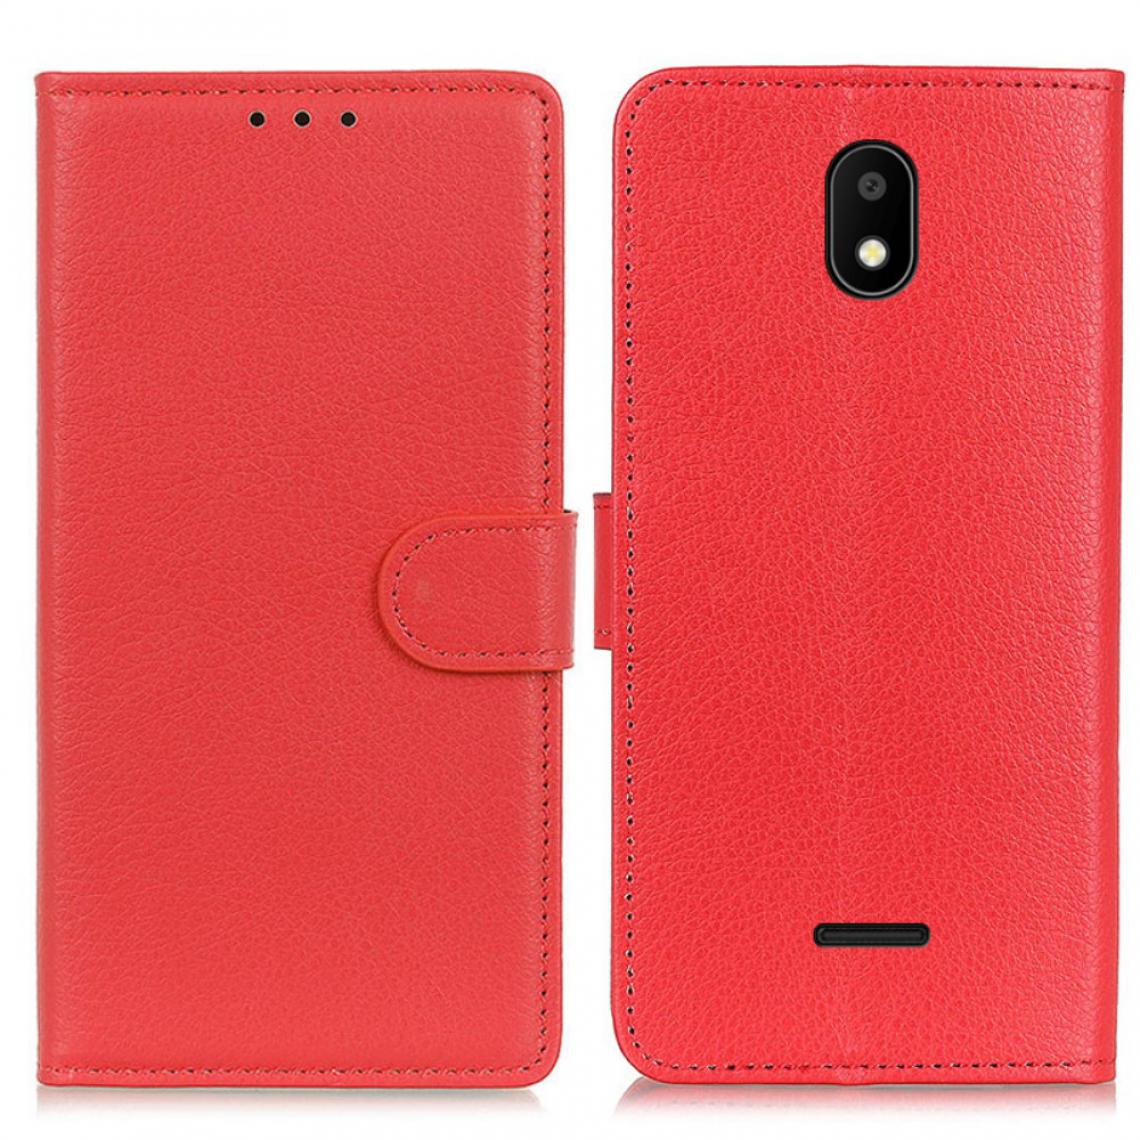 Other - Etui en PU Texture Litchi avec support rouge pour Vodafone Smart E11 - Coque, étui smartphone